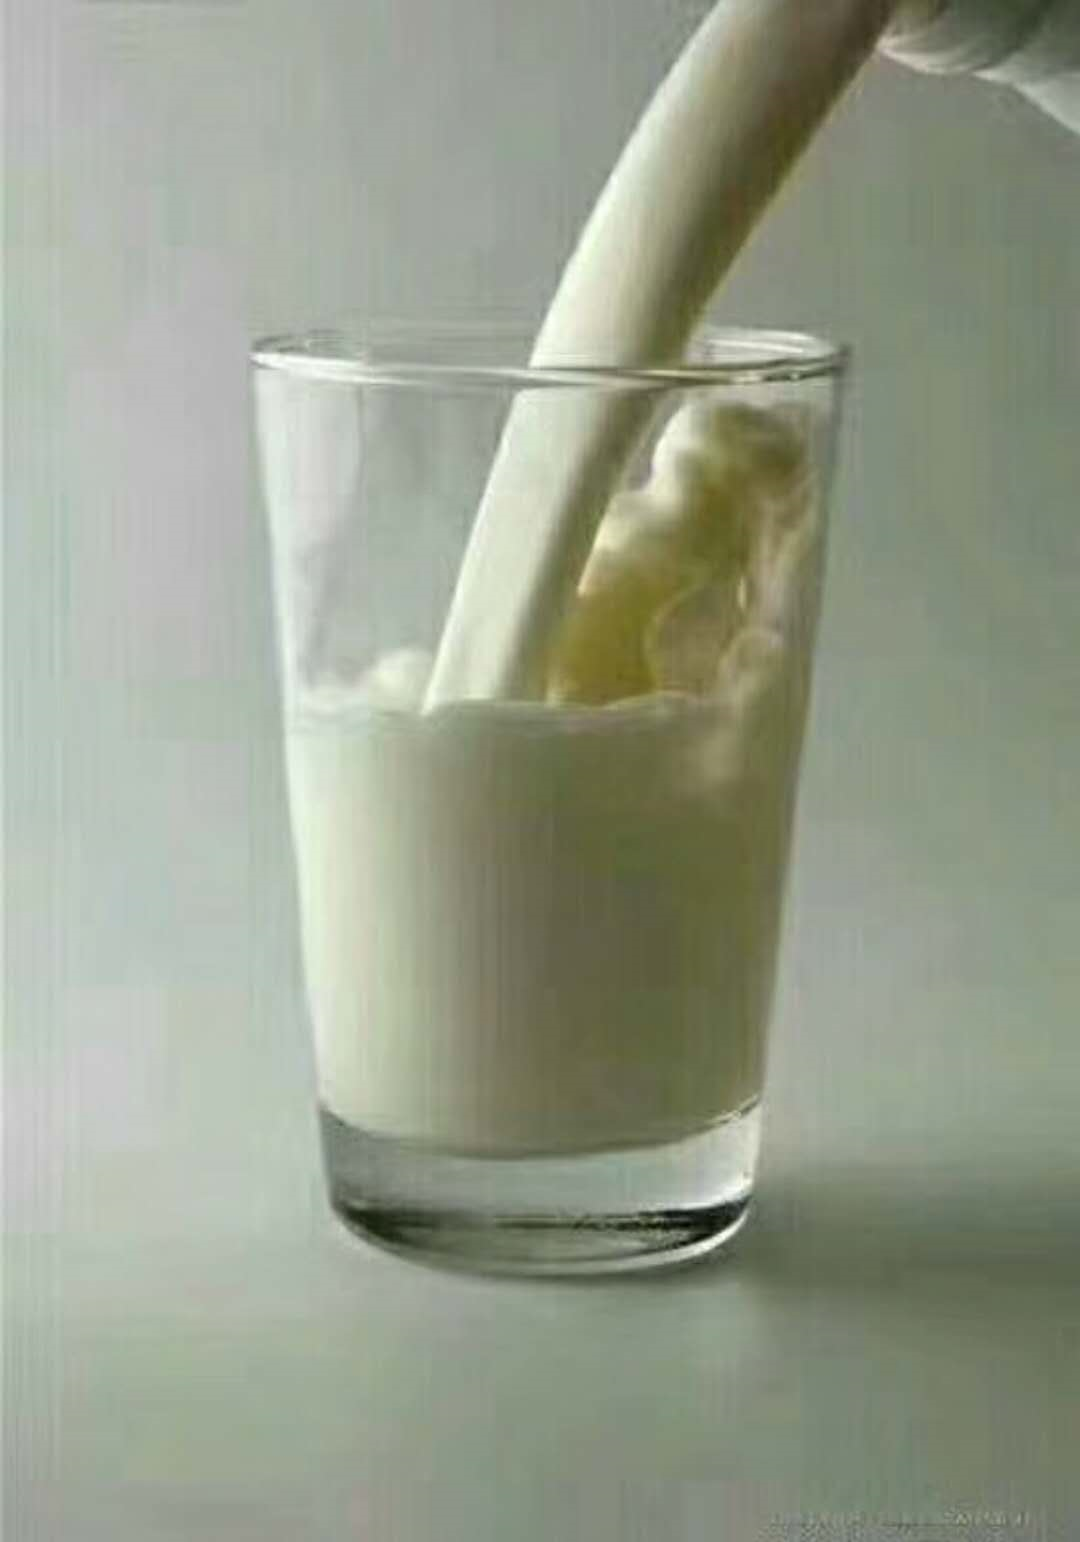 早上不能空腹喝牛奶? 睡覺前喝牛奶的效果較好? 喝牛奶的6大注意事項 | +01資訊網